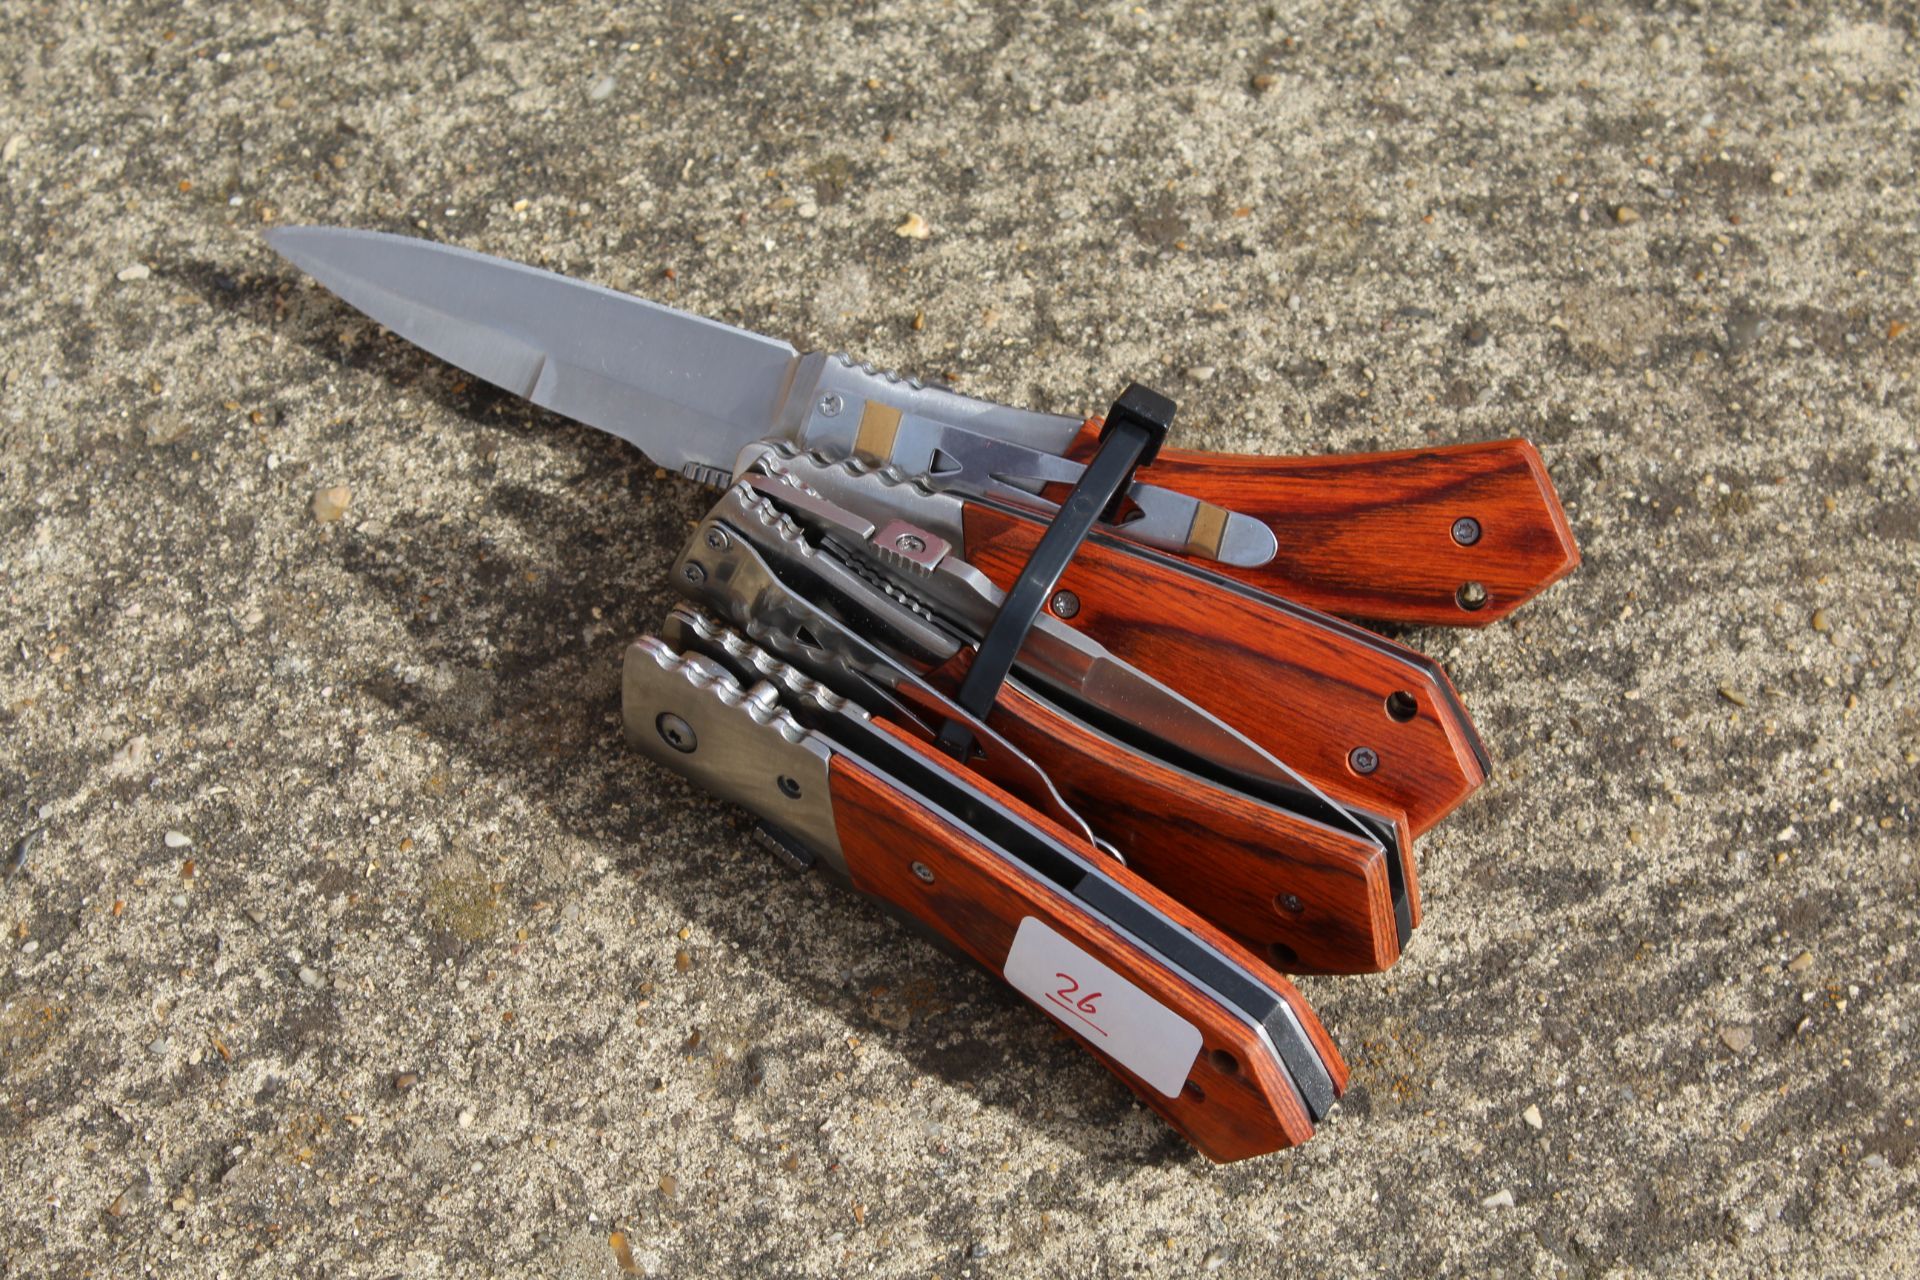 4x British folding pocket knife. V